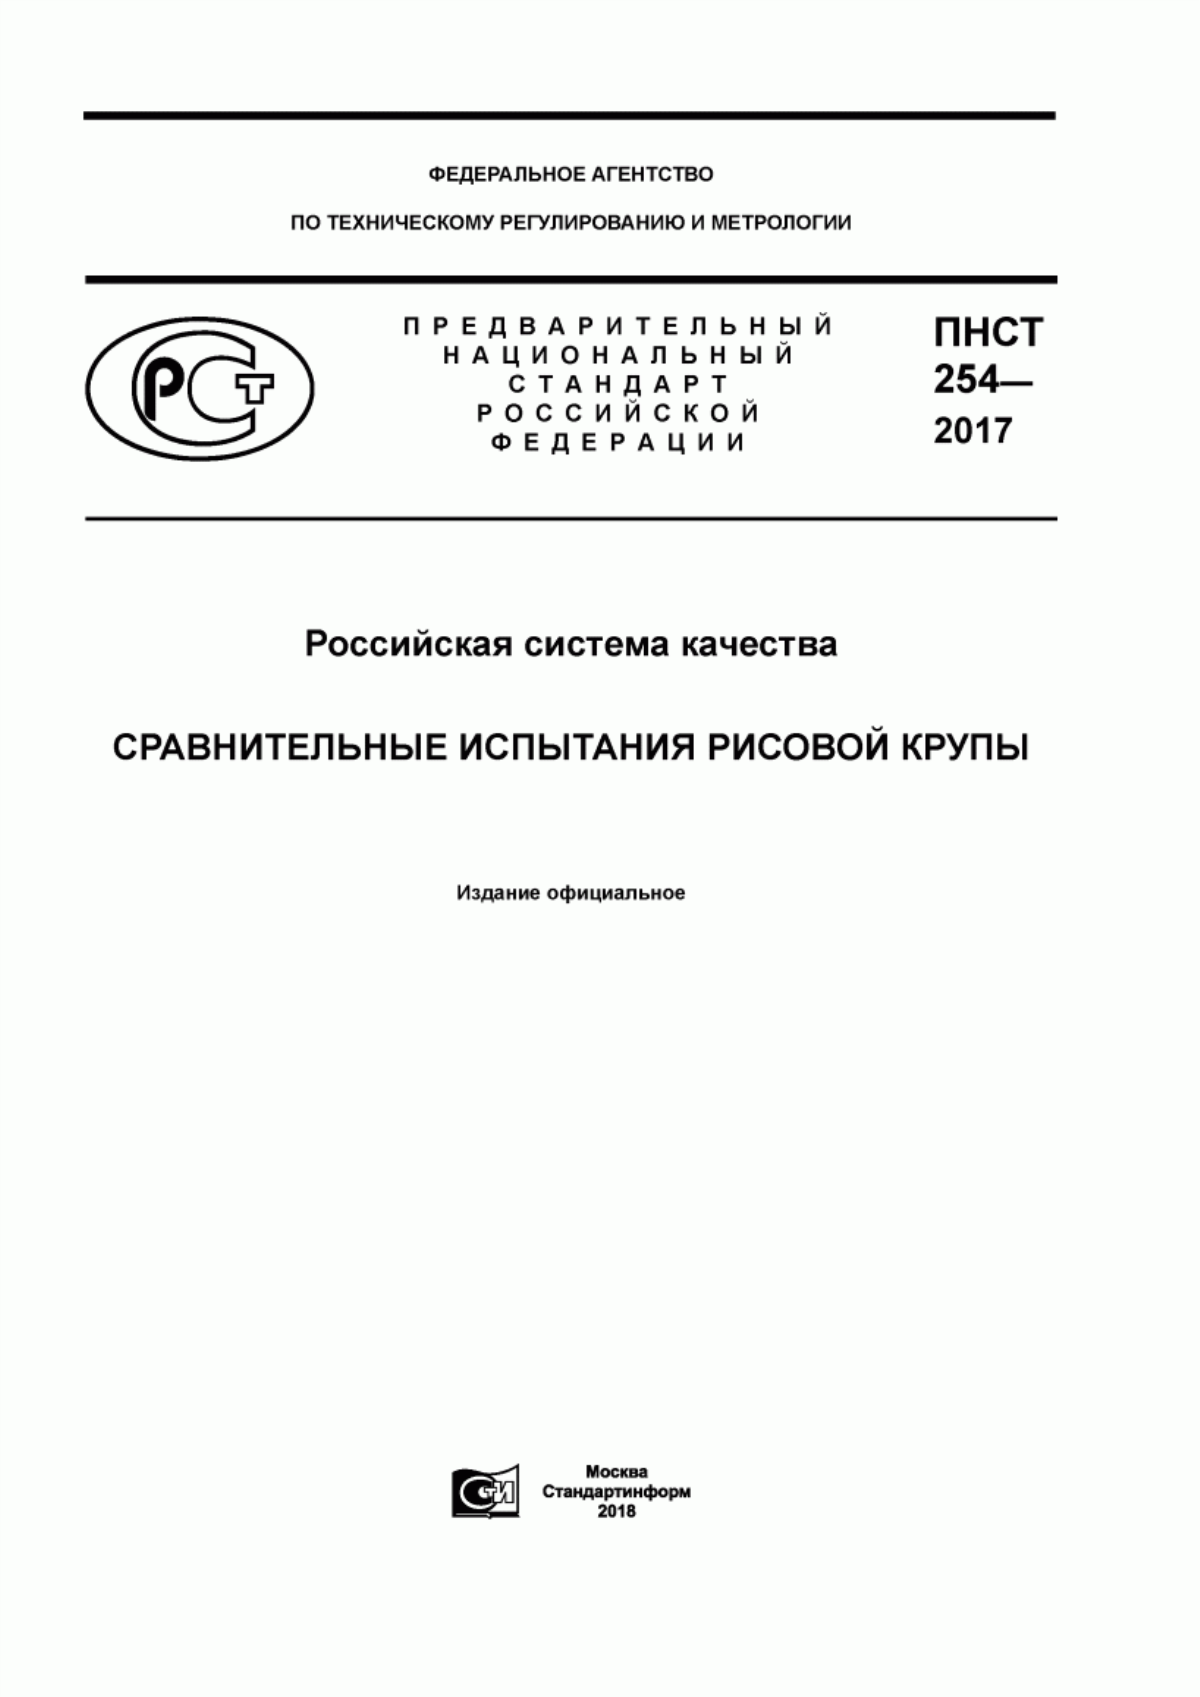 ПНСТ 254-2017 Российская система качества. Сравнительные испытания рисовой крупы